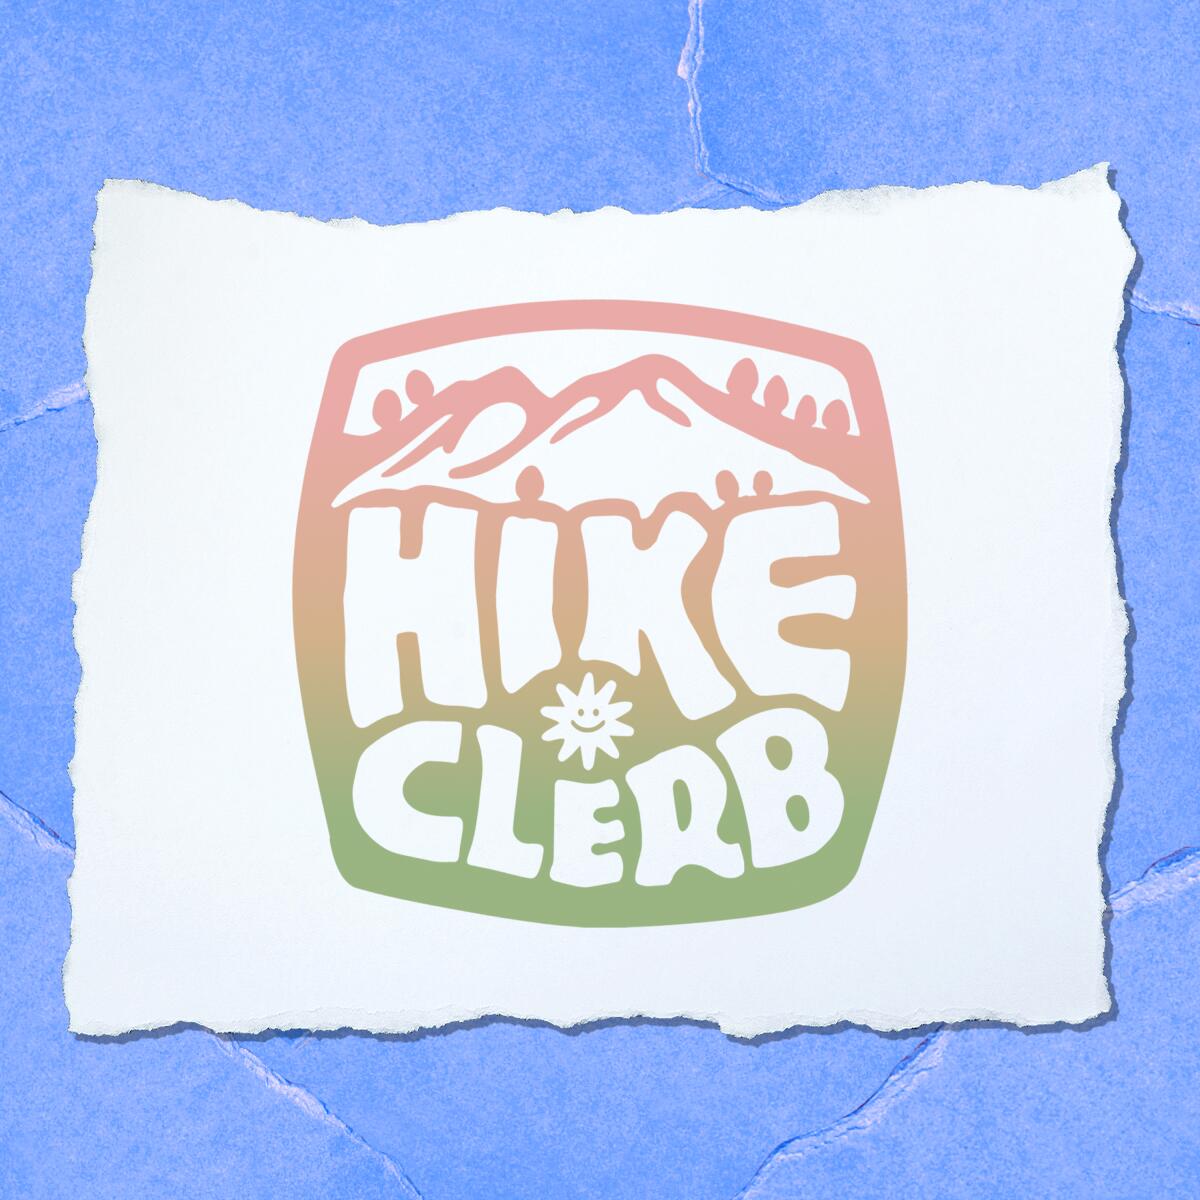 Hiking Clerb logo